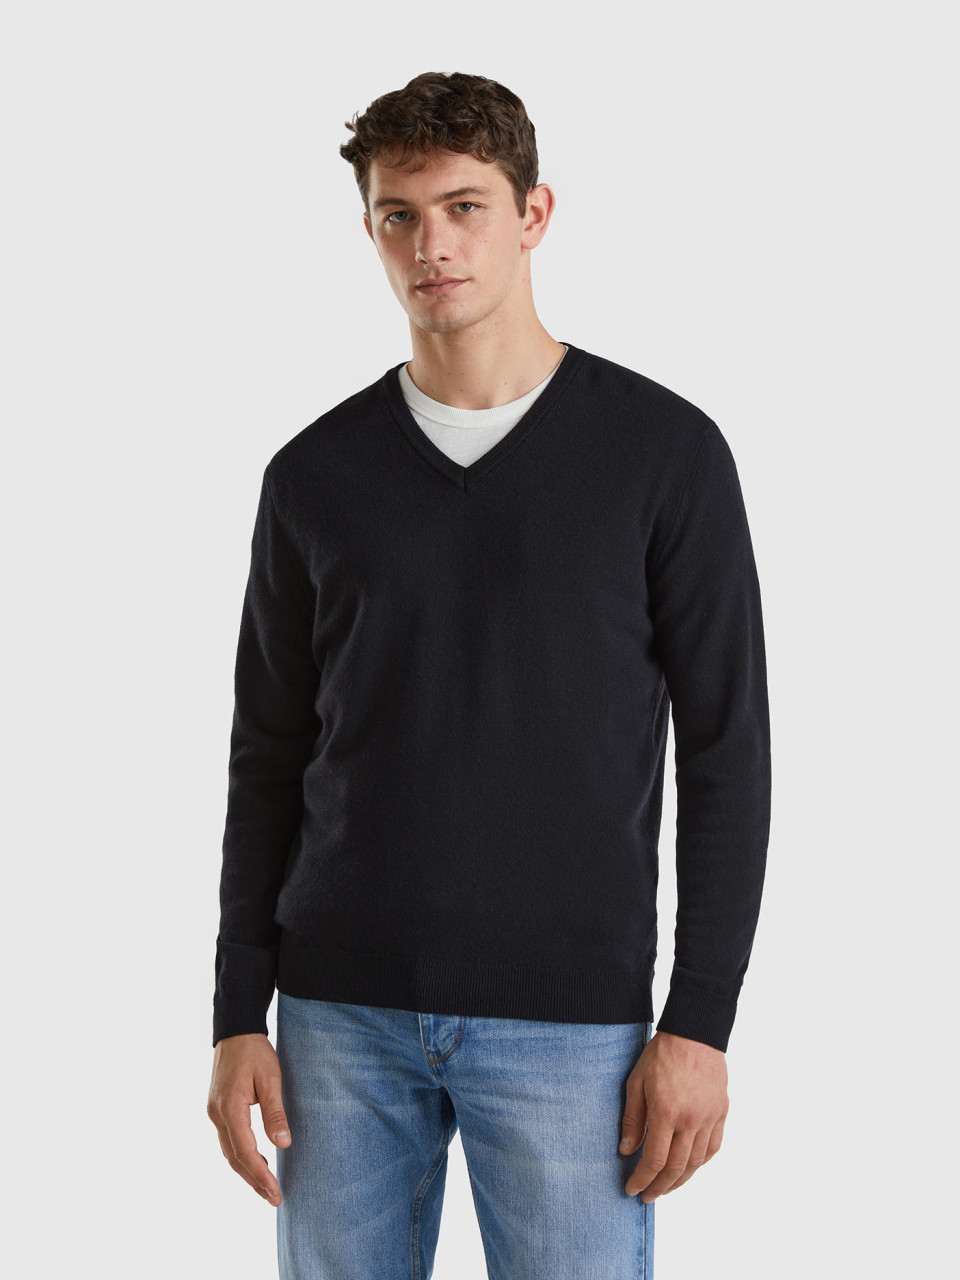 Benetton, Black V-neck Sweater In Pure Merino Wool, Black, Men